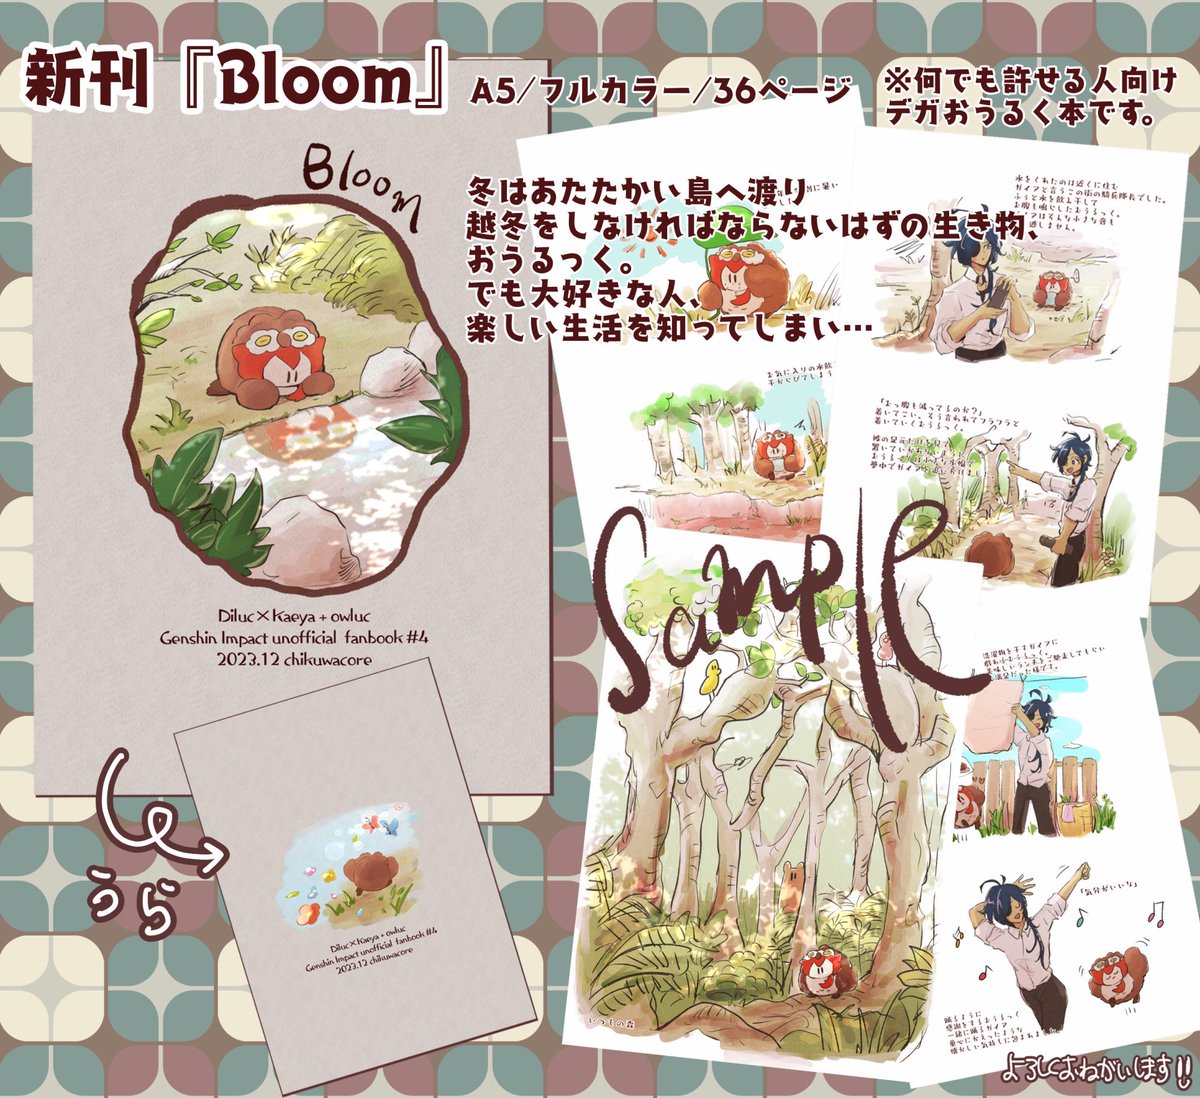 Bloom(ちくわコア)の通販・購入はフロマージュブックス |  https://t.co/h1fPHpFLGY
こちら納品されておりました!ディルガイおうるく本よろしくお願いします🟤✨ 